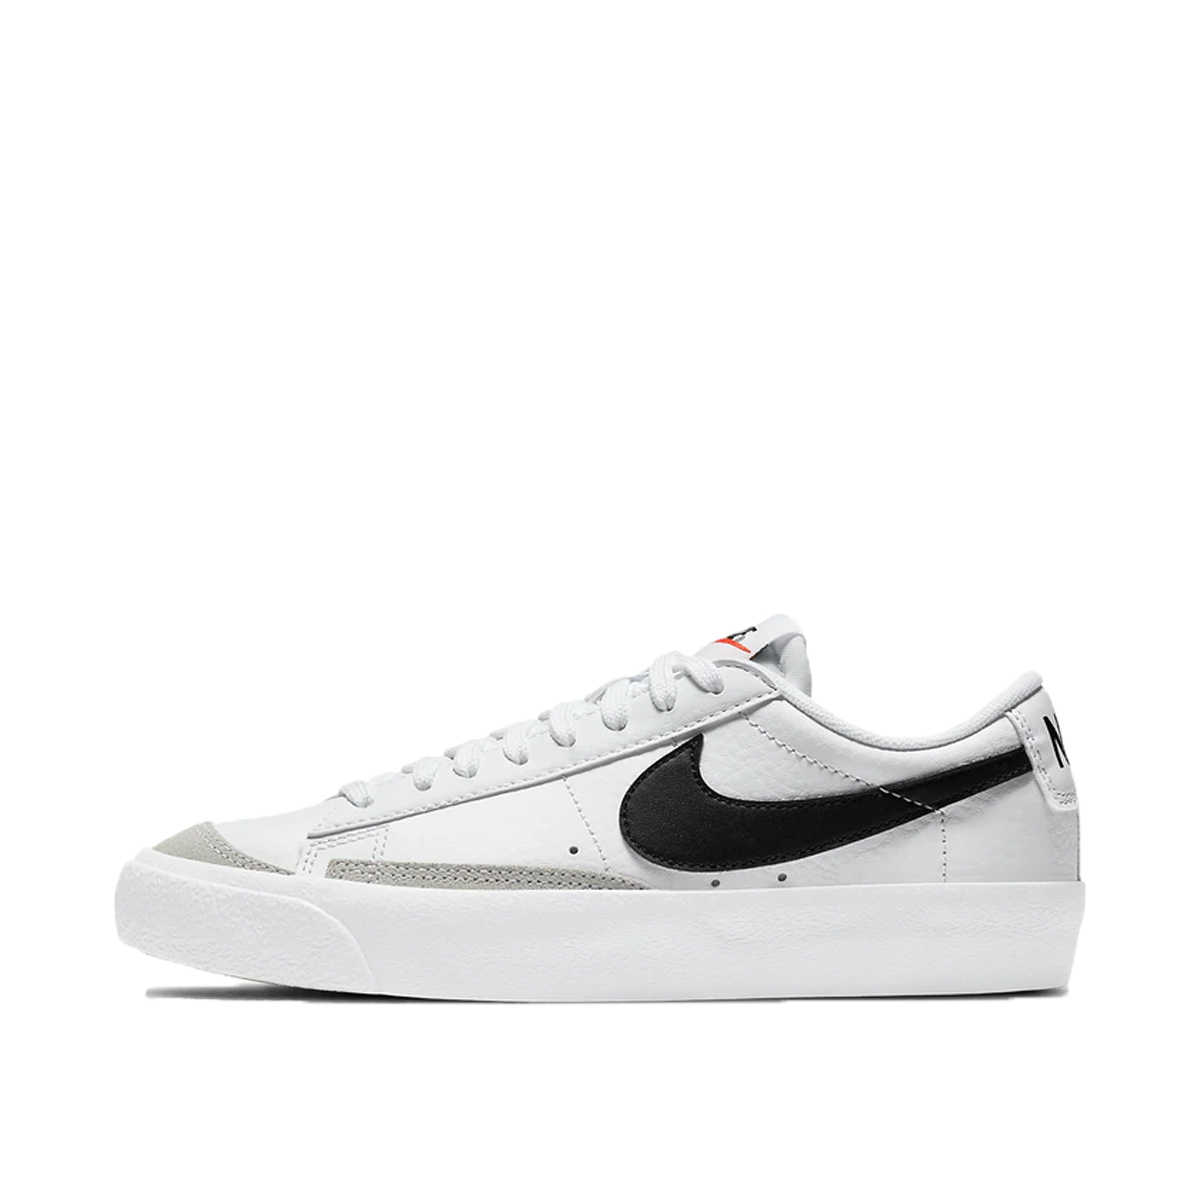 Nike Blazer Low 77 Vintage White Black (GS) (2020) | DA4074-101 - KLEKT